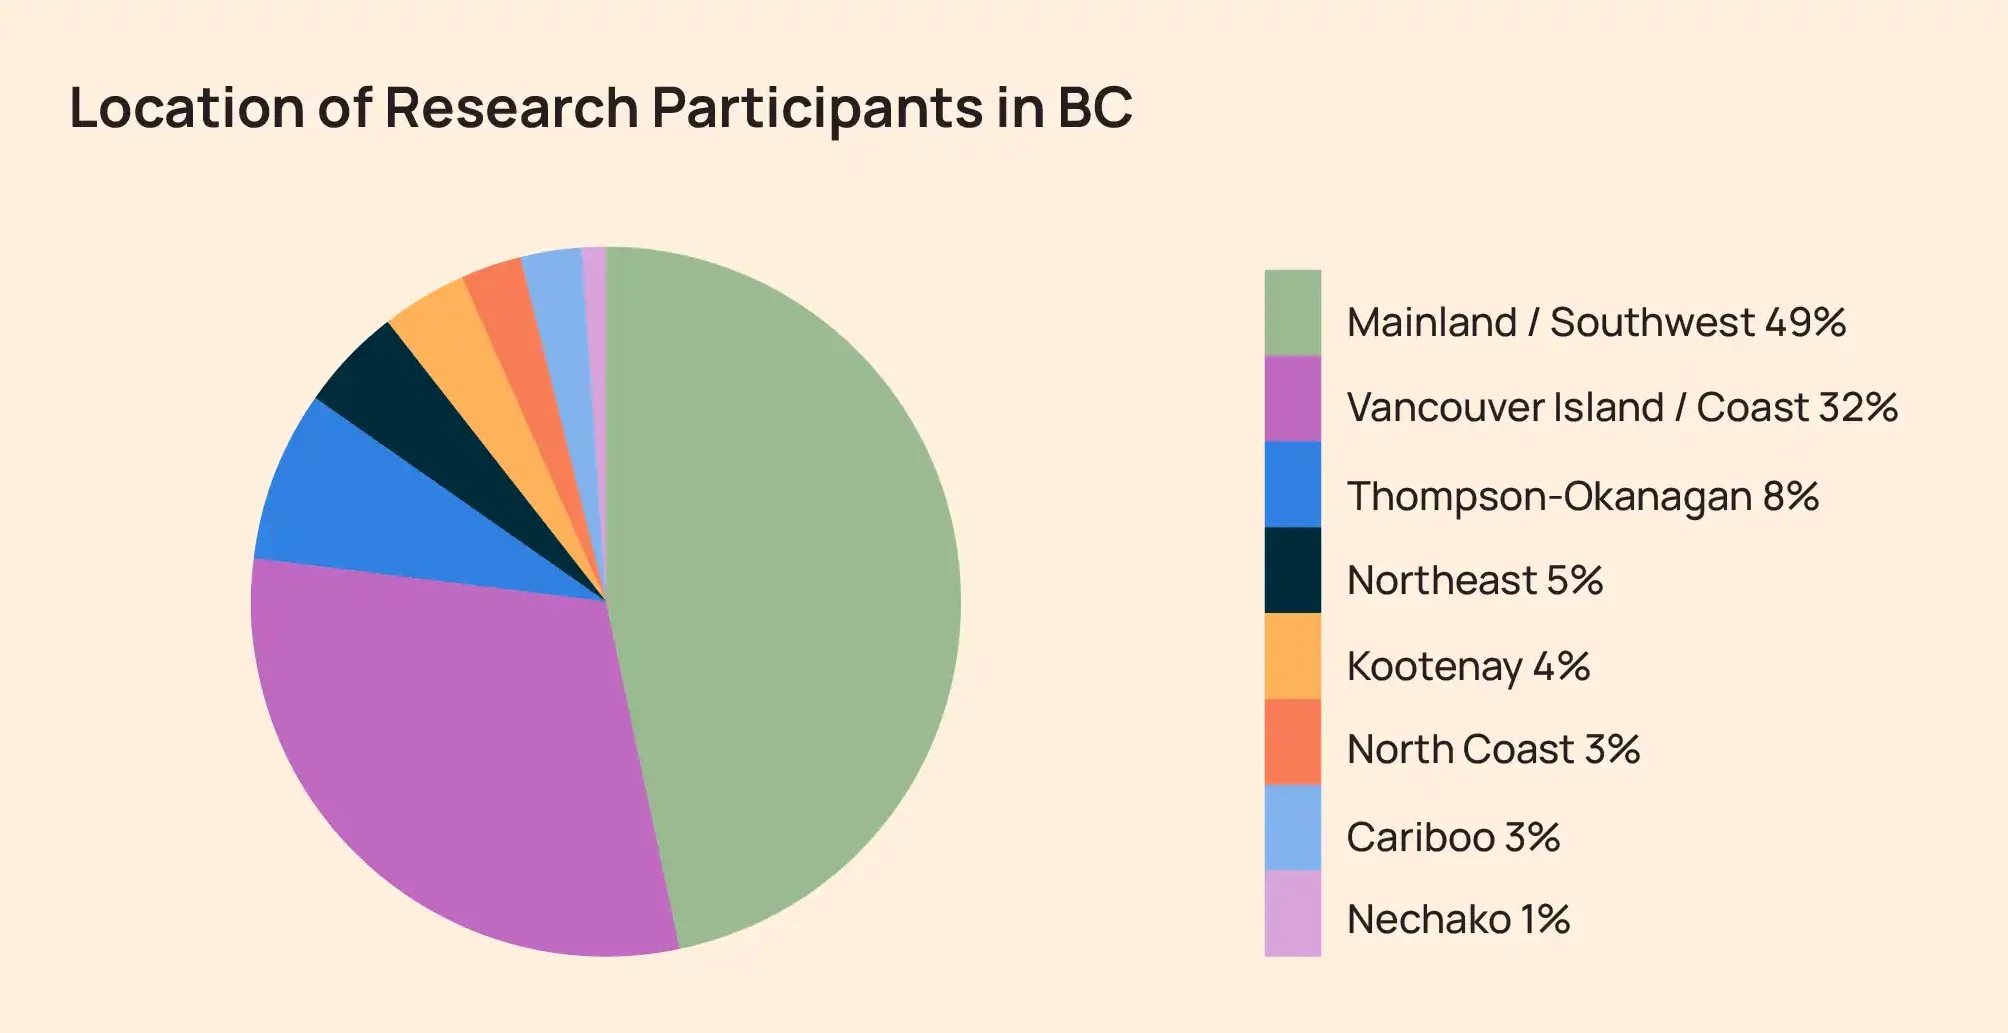 圖表顯示了 BC 省研究參與者的位置，其中 49% 來自大陸西南地區。